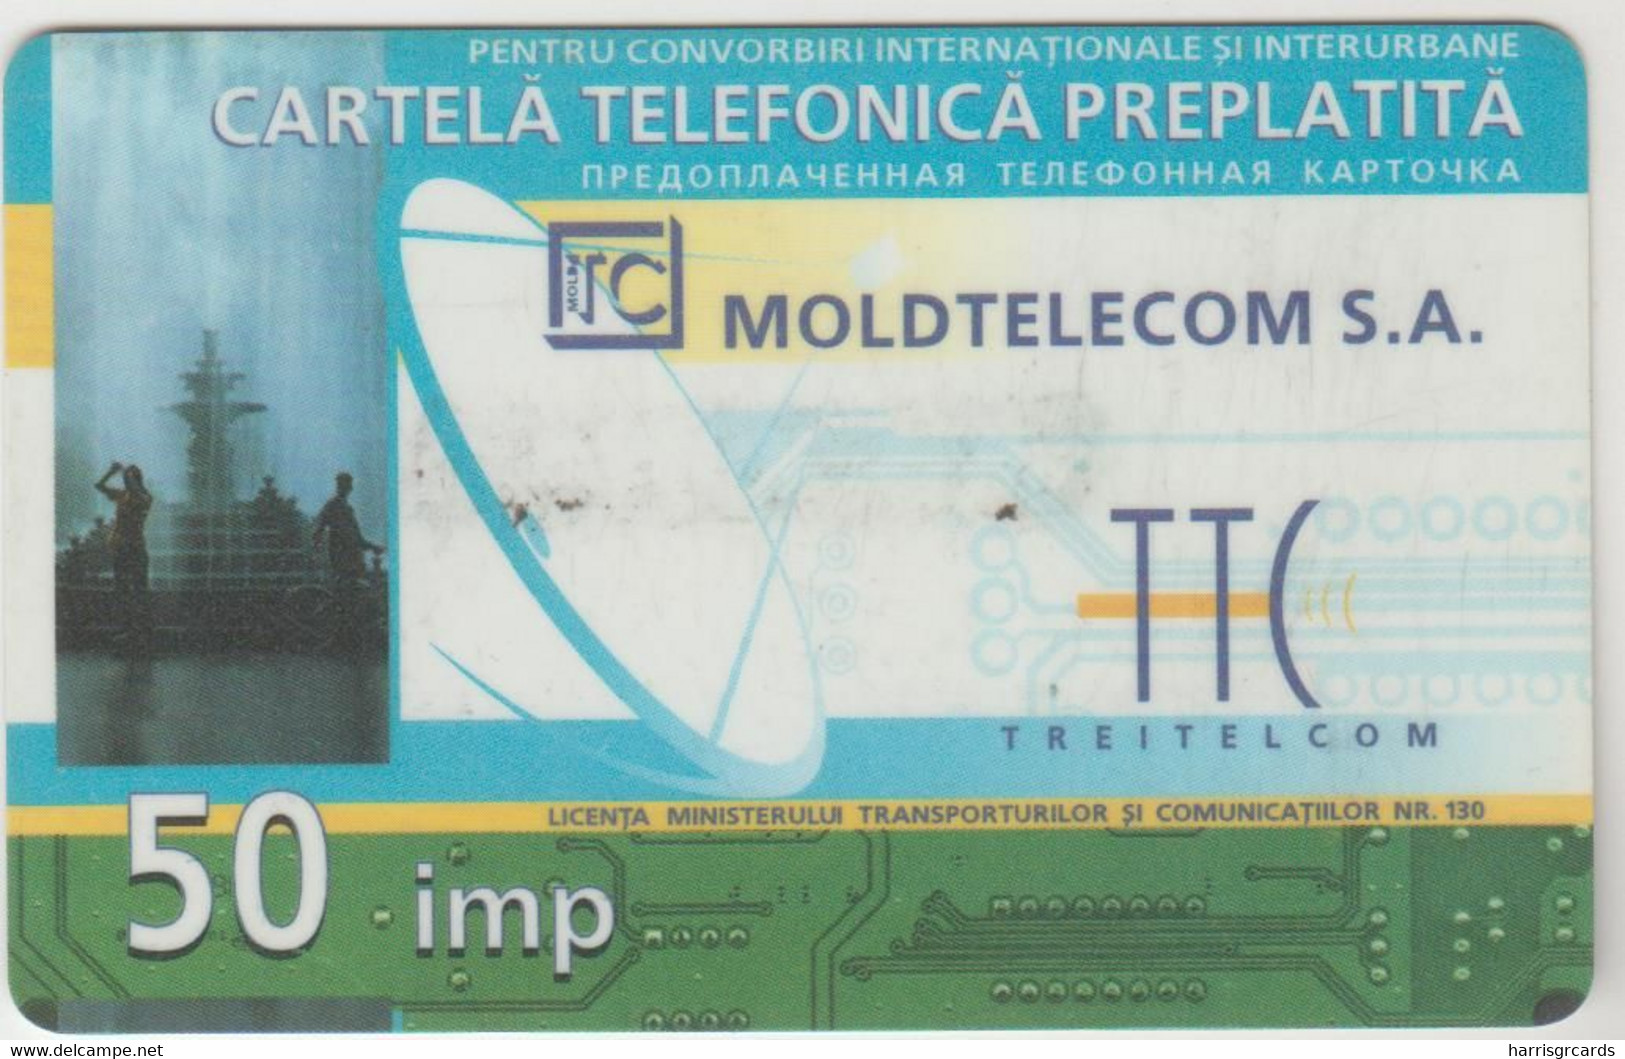 MOLDOVA - Moldtelecom 50 Units Prepaid Card ,used - Moldova